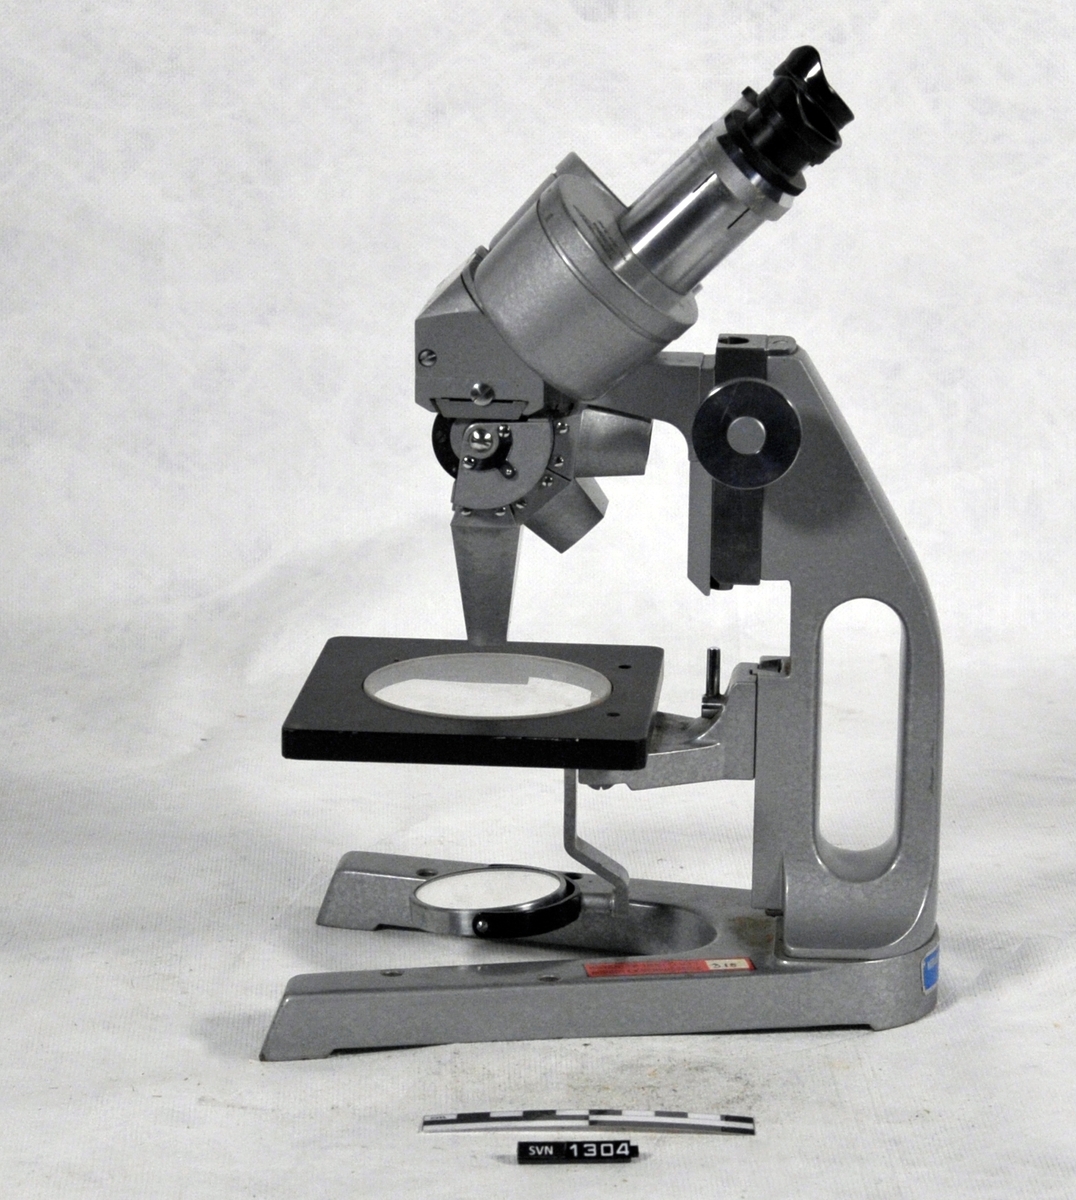 Gjenstanden er et mikroskop i kasse, med utstyr.
Oppbevaringskassen er laget av tre, på en side er det en dør. På toppen er det et håndtak. I håndtaket er festet en snor, i den andre enden av snoren er det en sort pose som inneholder nøkkel til kassen.

A er oppbevaringskasse
B er mikroskop